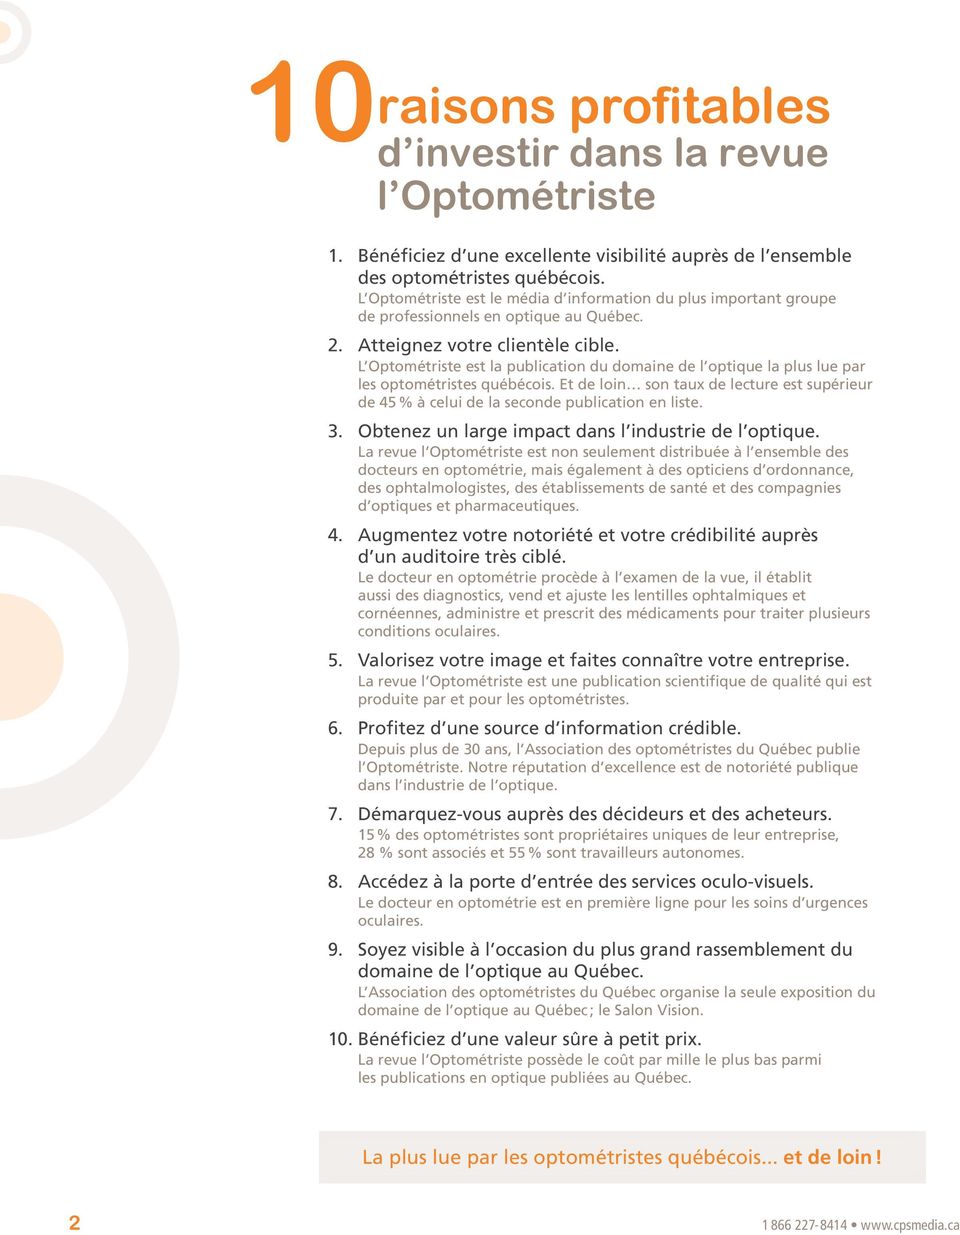 L Optométriste est la publication du domaine de l optique la plus lue par les optométristes québécois. Et de loin son taux de lecture est supérieur de 45 % à celui de la seconde publication en liste.